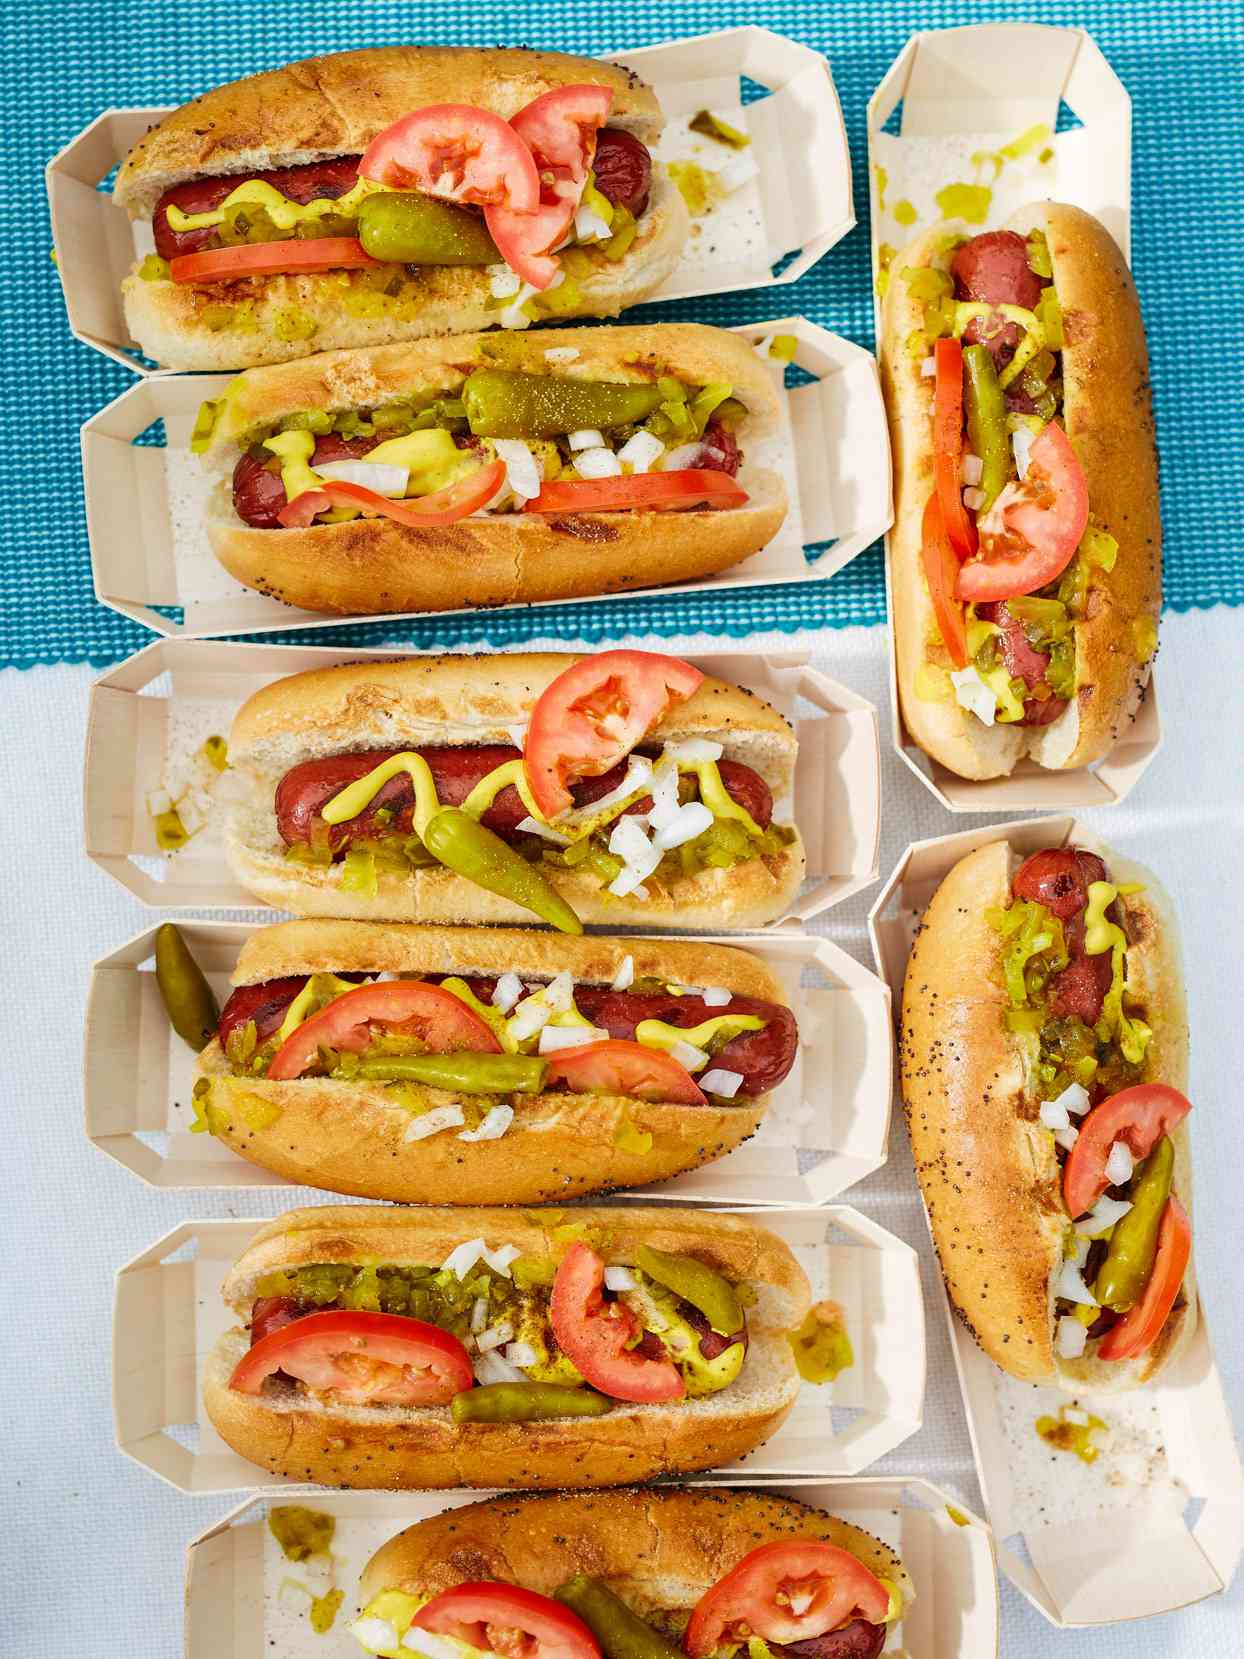 Cinema Snacks: Hot Dogs 8 Ways